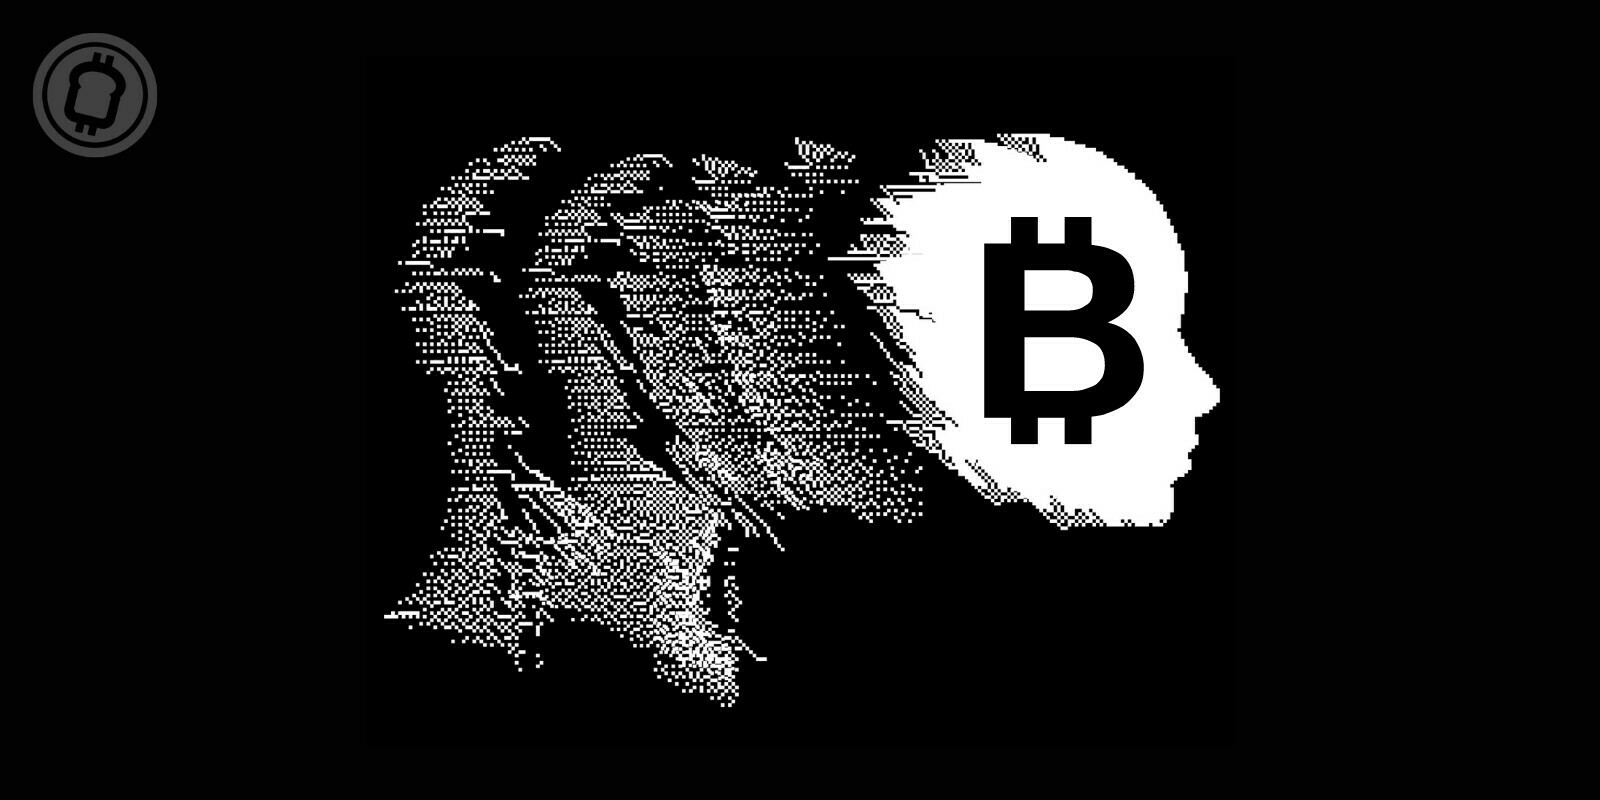 Les investisseurs en Bitcoin (BTC) auraient des traits psychopathiques, selon une étude